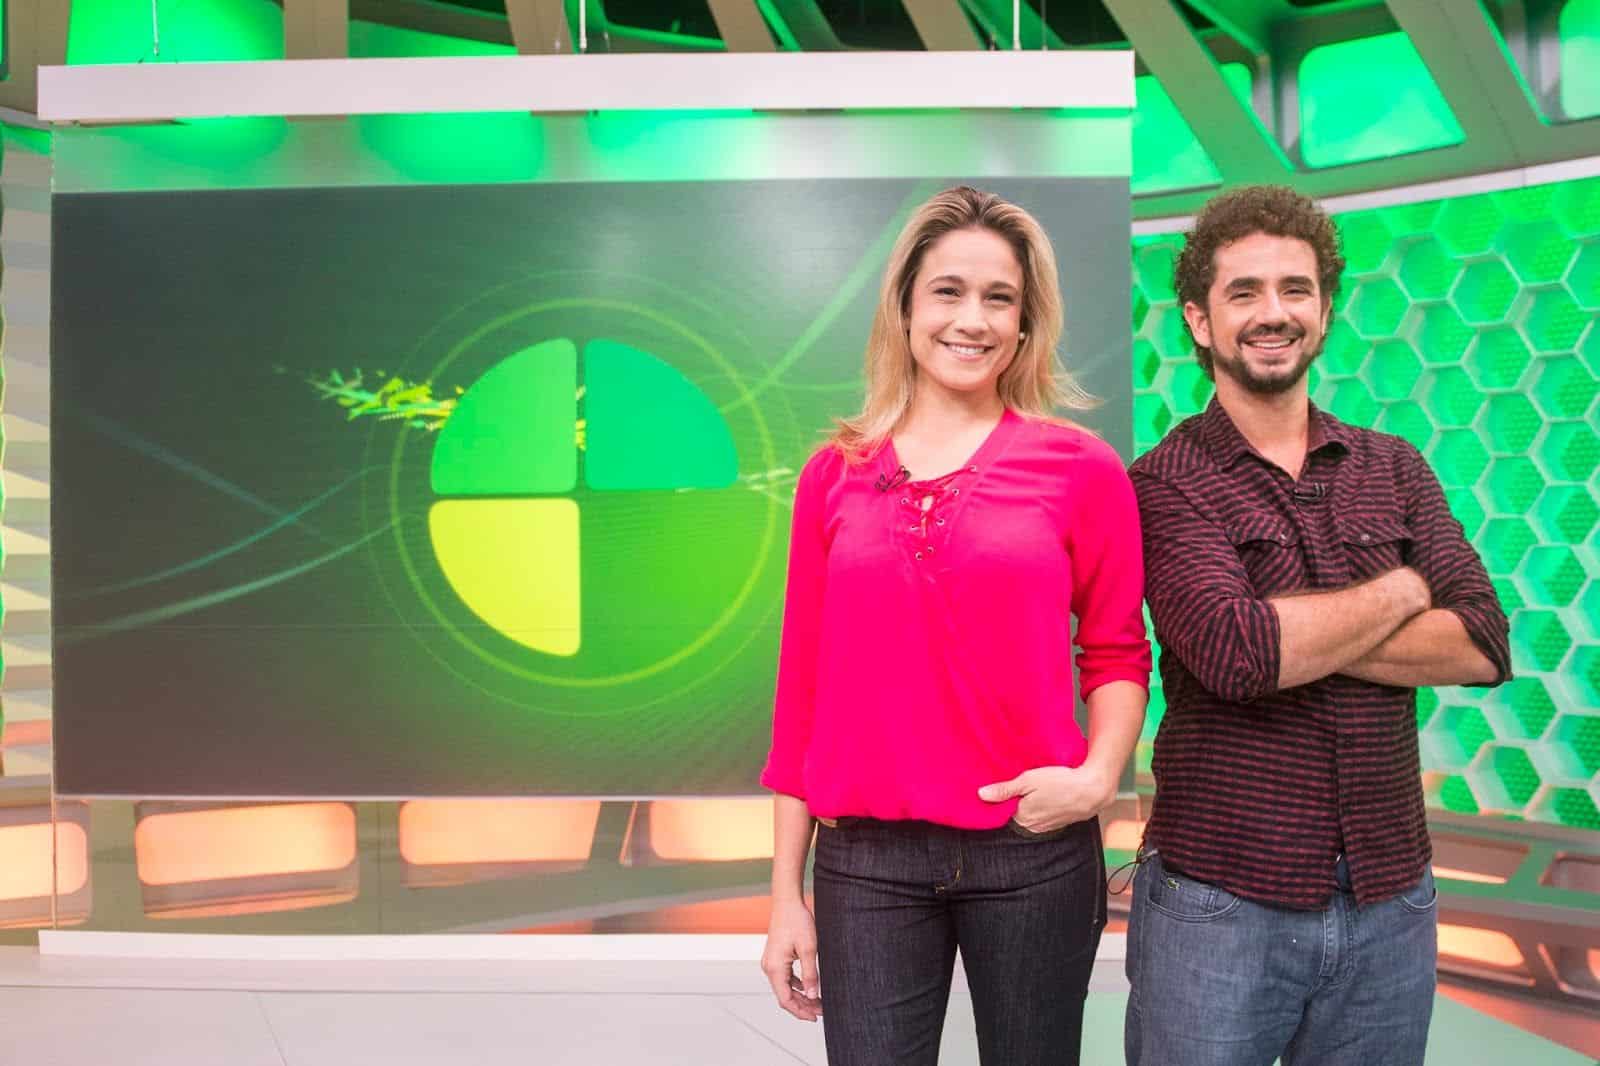 Globo libera “Esporte Espetacular” para fazer matérias pagas